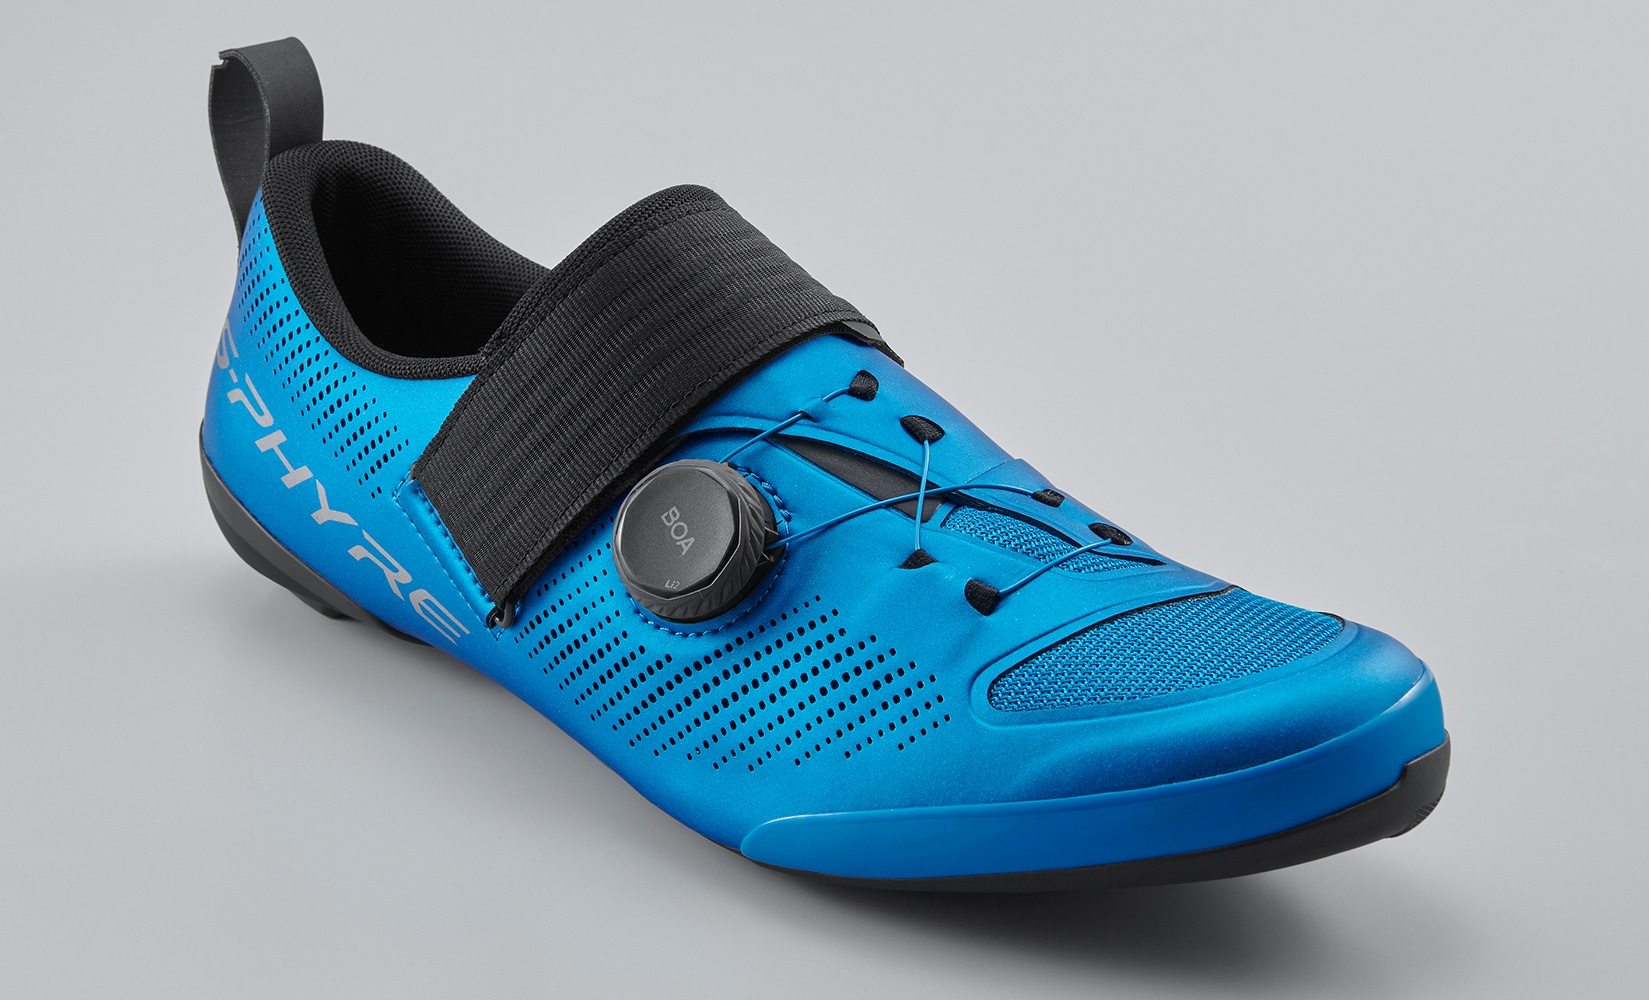 Zapatillas Shimano S-Phyre XC903, así son sus nuevas tope de gama de MTB